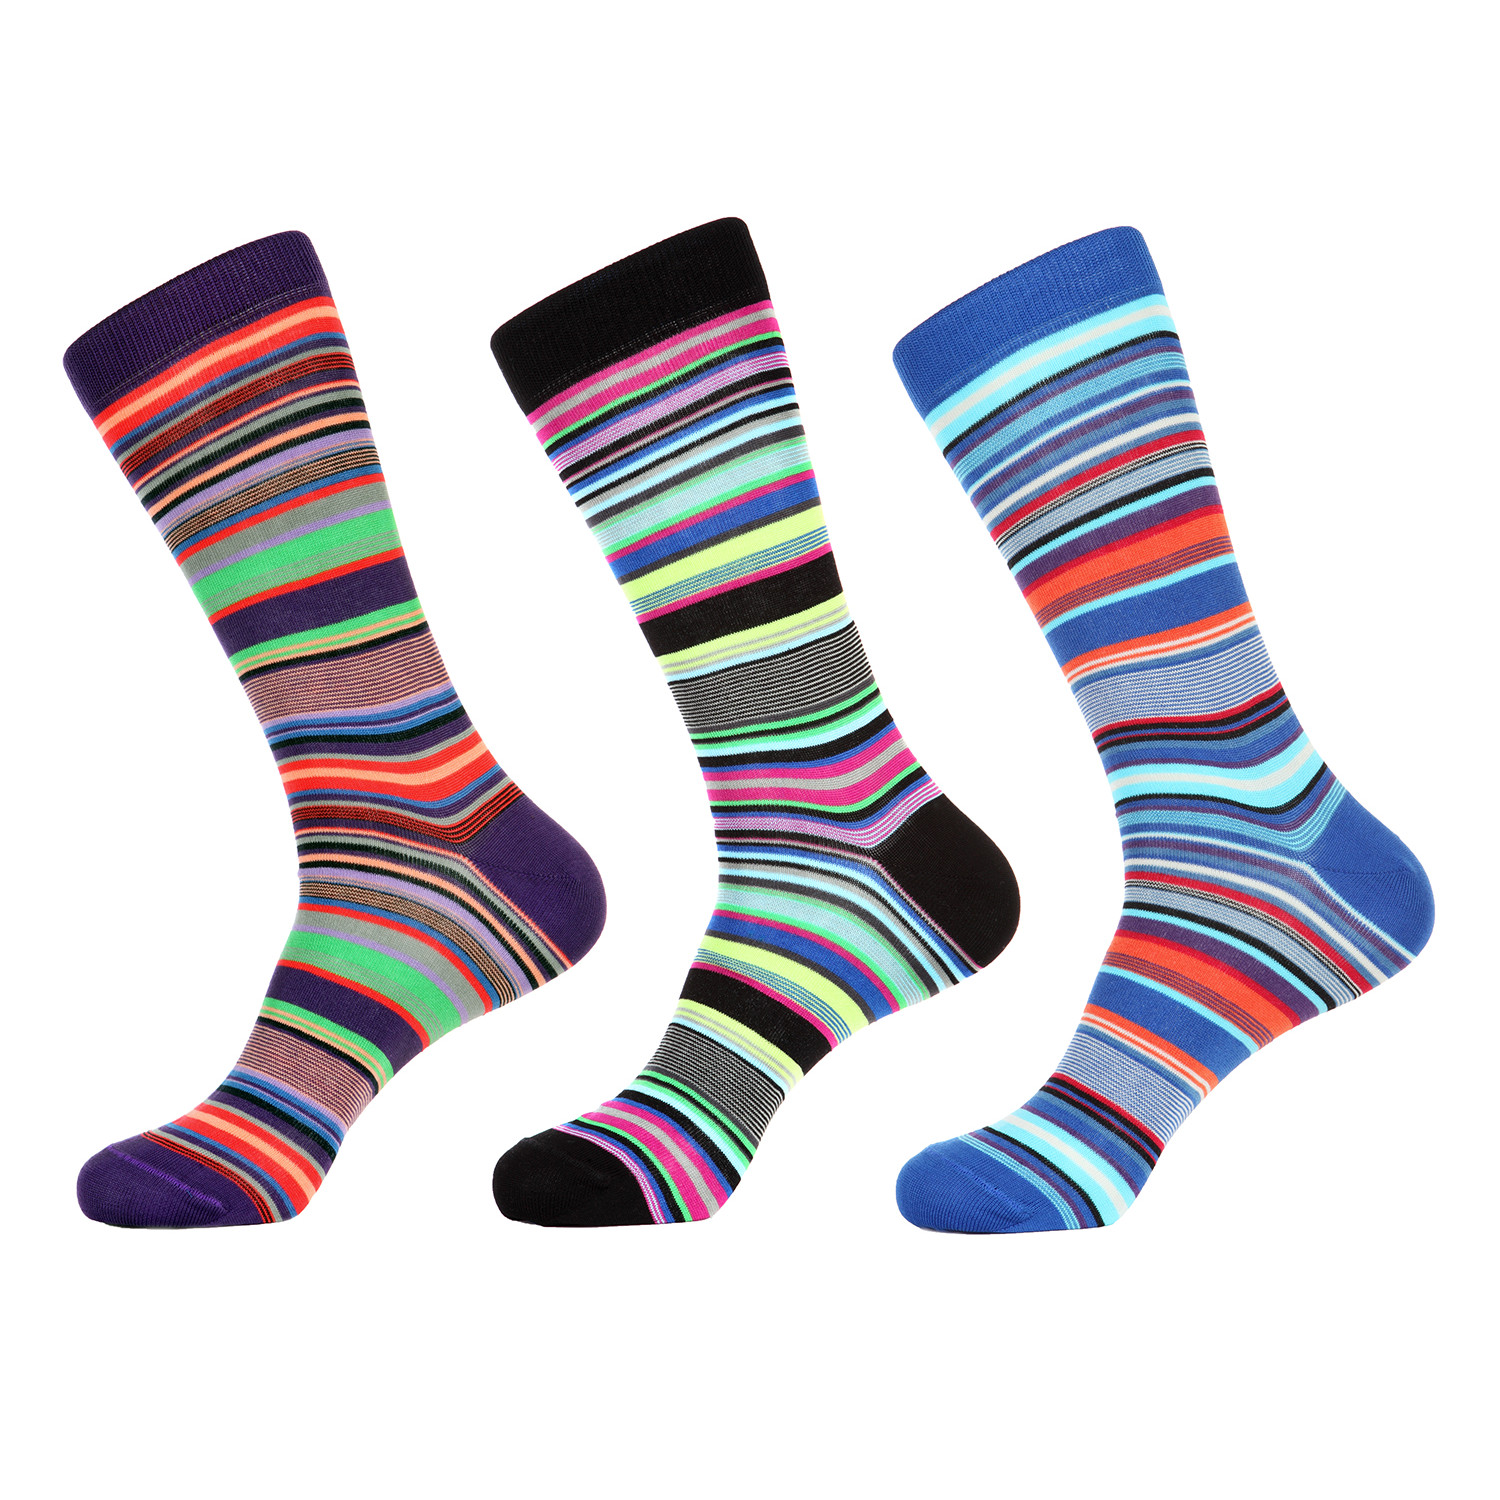 Random Striped Socks // Pack of 3 - Jared Lang Socks - Touch of Modern